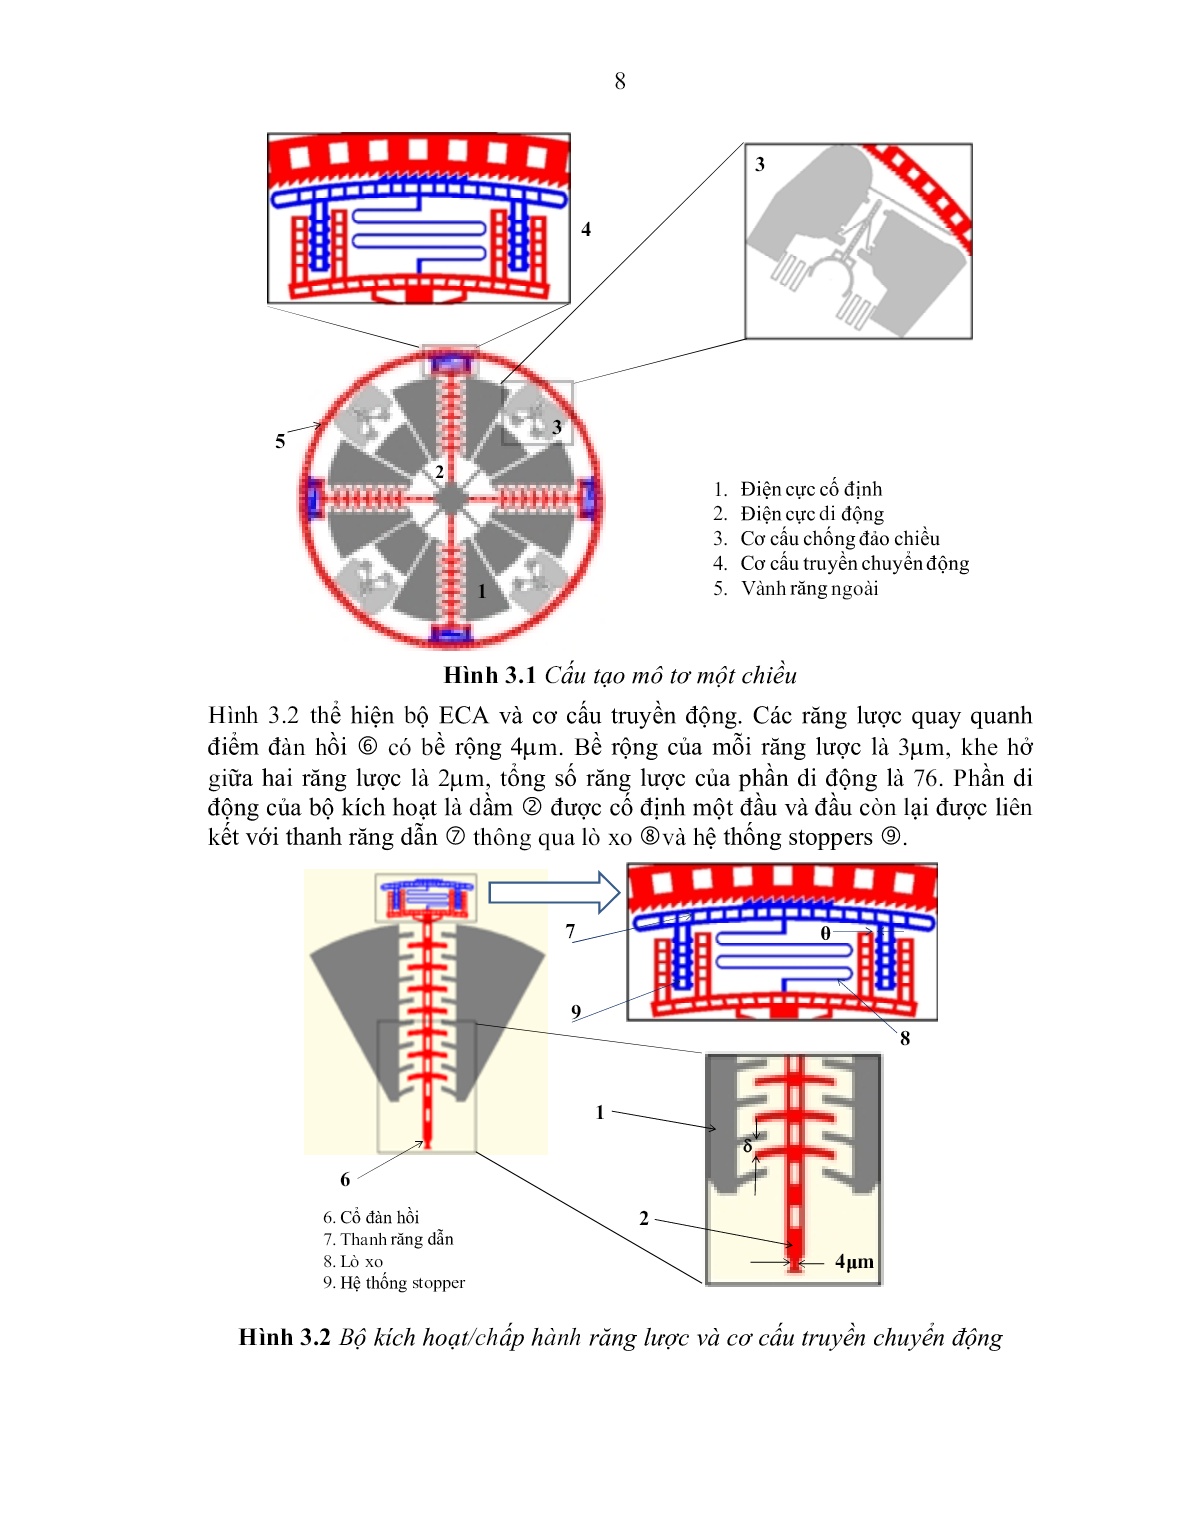 Tóm tắt Luận án Nghiên cứu vi động cơ kiểu tĩnh điện dựa trên công nghệ vi cơ điện tử trang 10